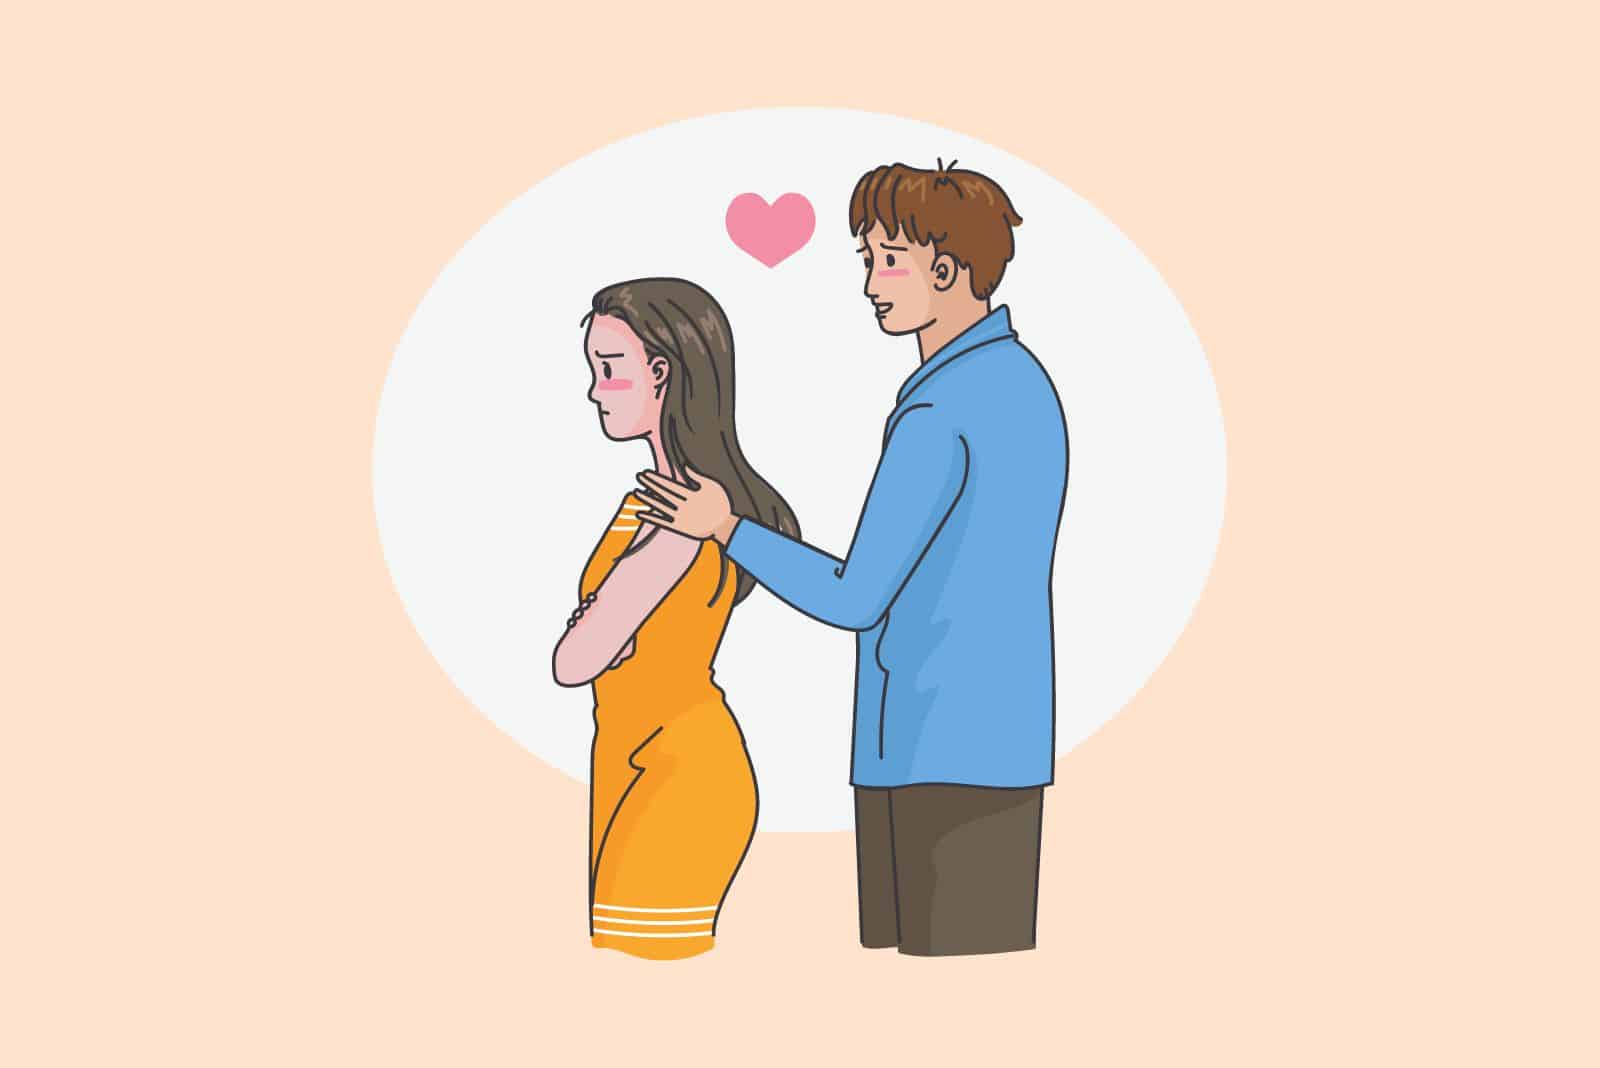 Zeichnung eines Mannes, der die Beziehung zu seiner Partnerin retten will